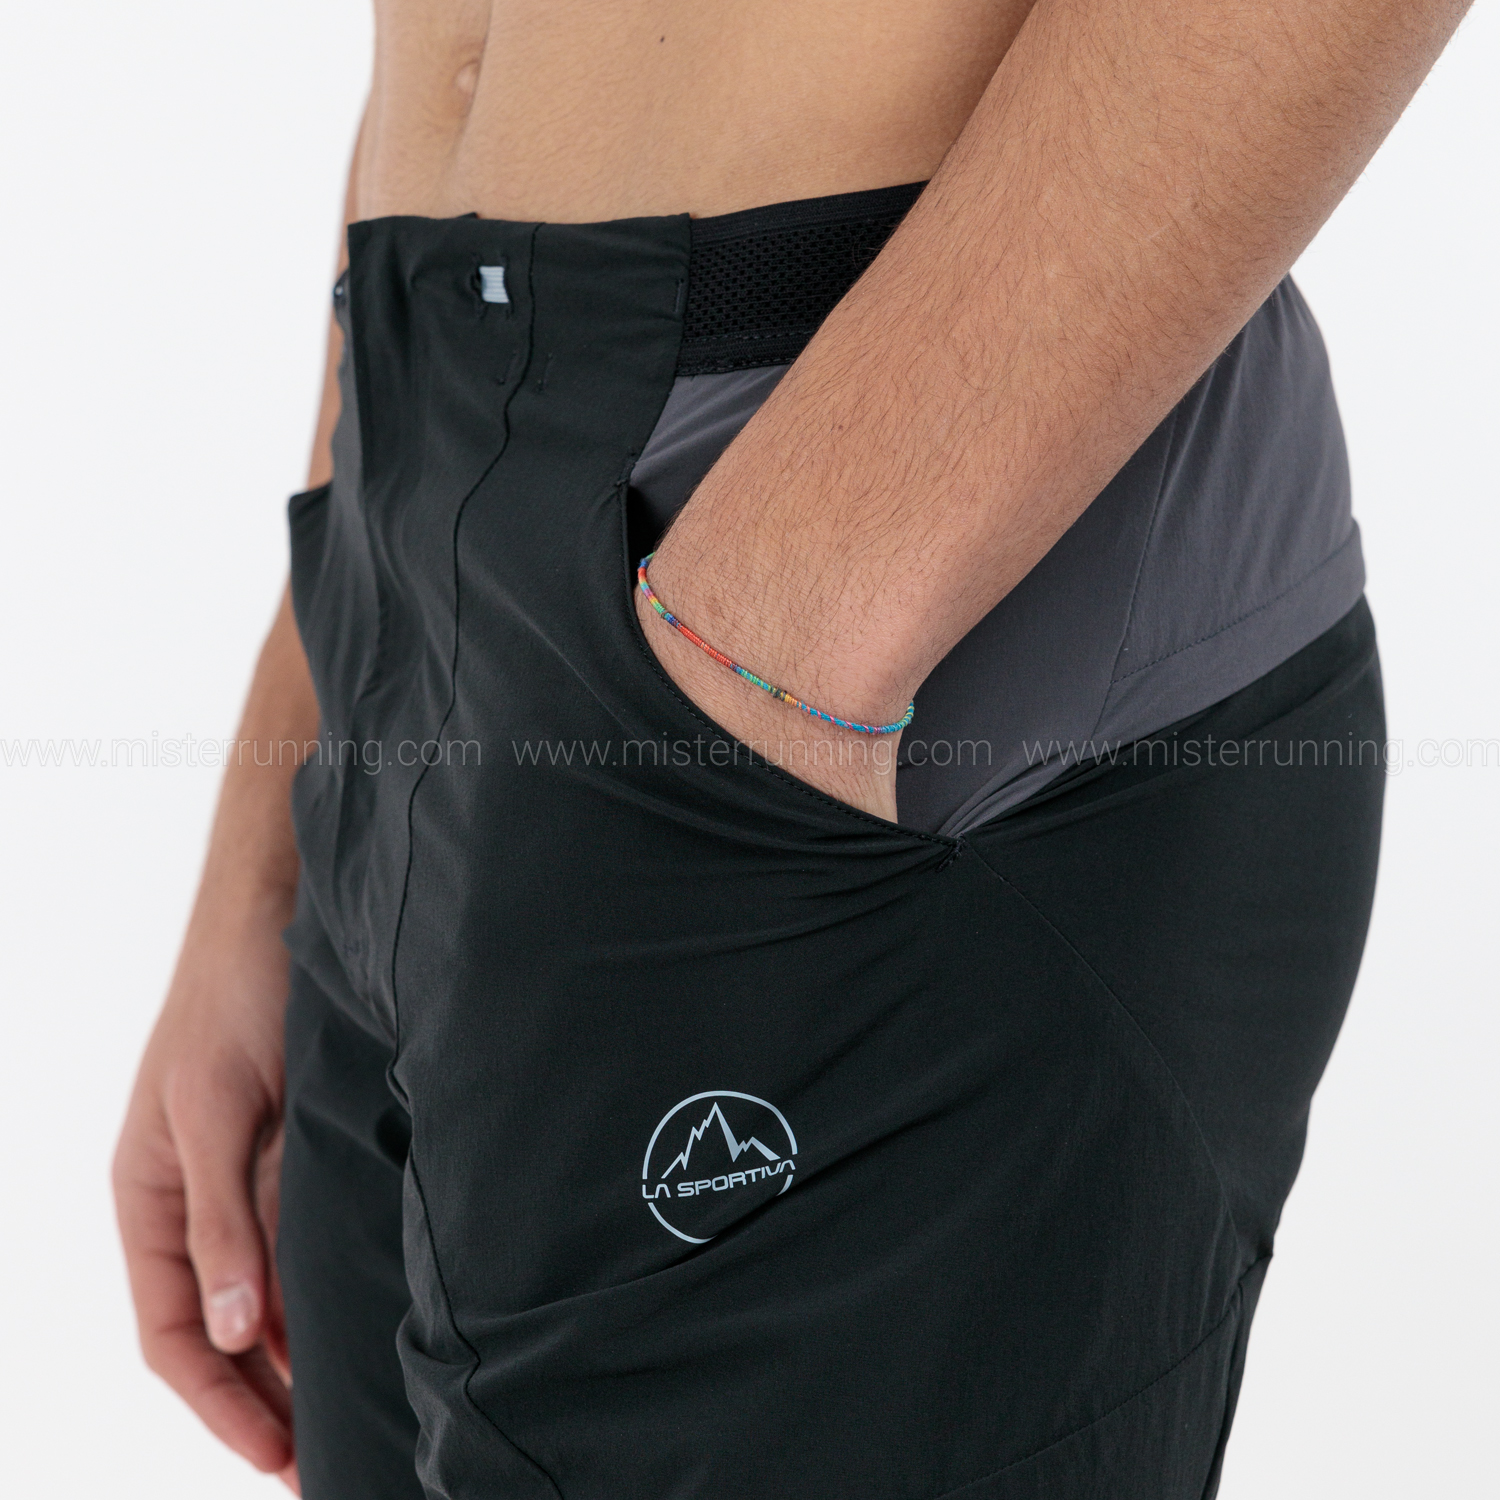 La Sportiva Guard 9in Shorts - Black/Carbon